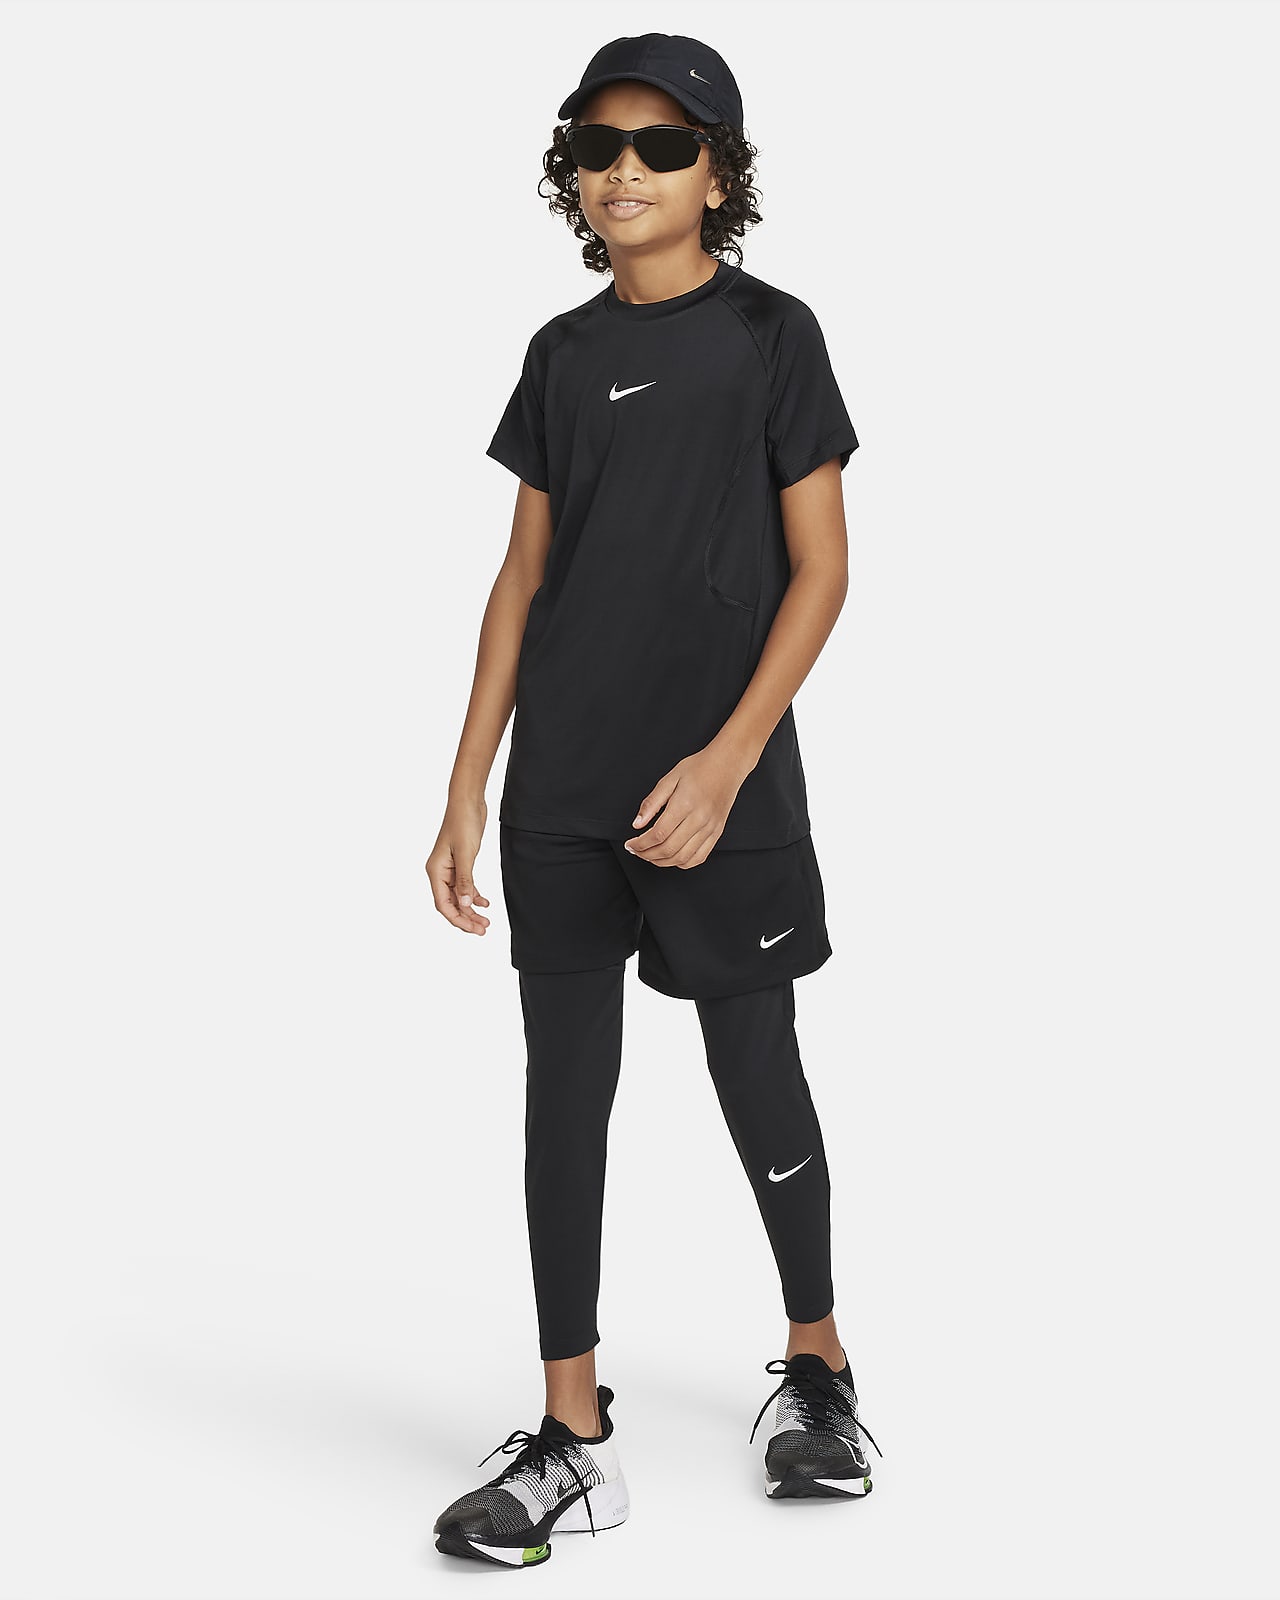 Buy Nike Men's Pro Dri-FIT Tights Grey in KSA -SSS